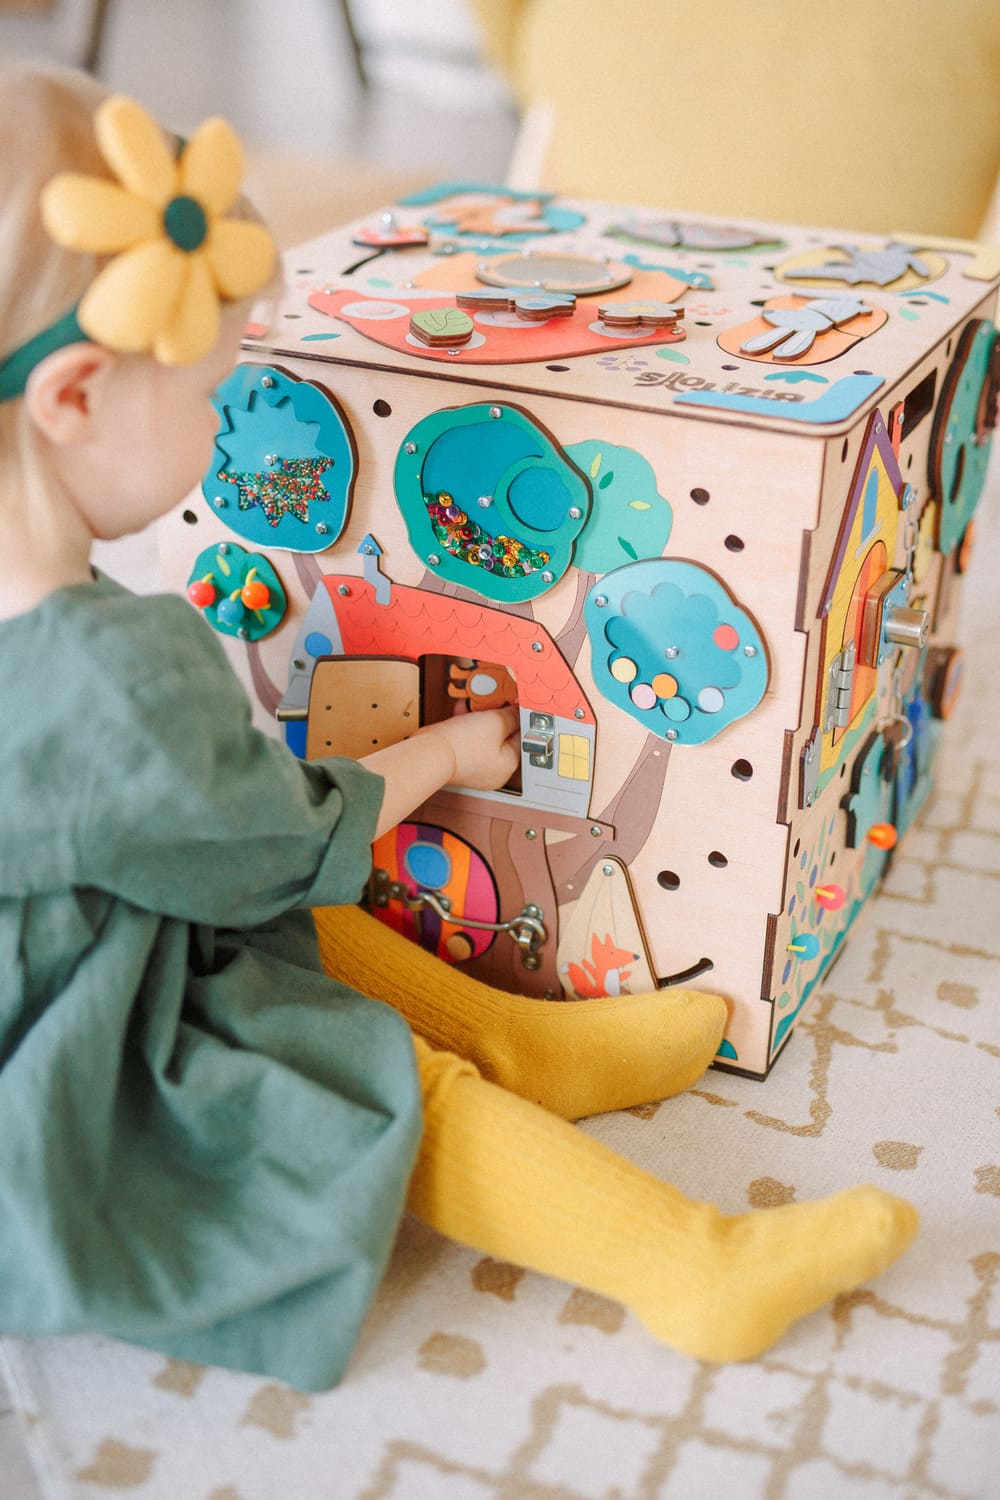 Kostka Bizibox to przede wszystkim świetna zabawka dla dzieci w każdym wieku. Mnogość i różnorodność elementów dostarcza wielu ciekawych wrażeń, pobudza ciekawość i kreatywność. 